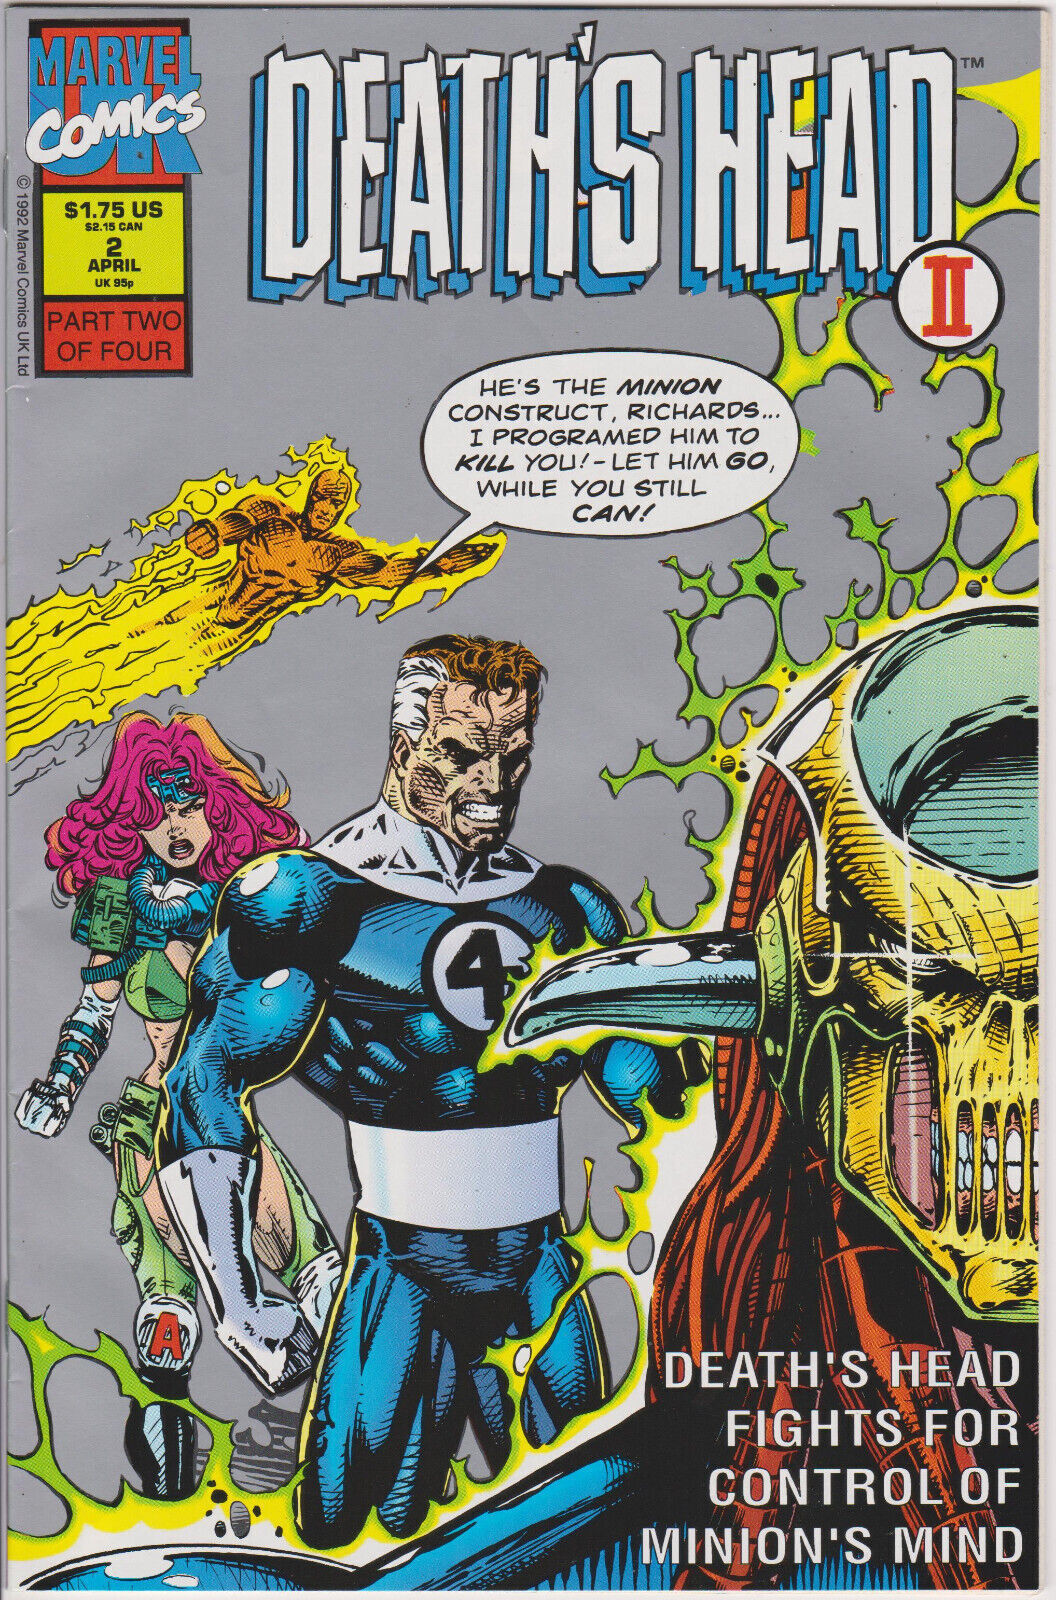 Death's Head II #2, Vol. 2 (1992) Marvel UK Imprint of Marvel Comics